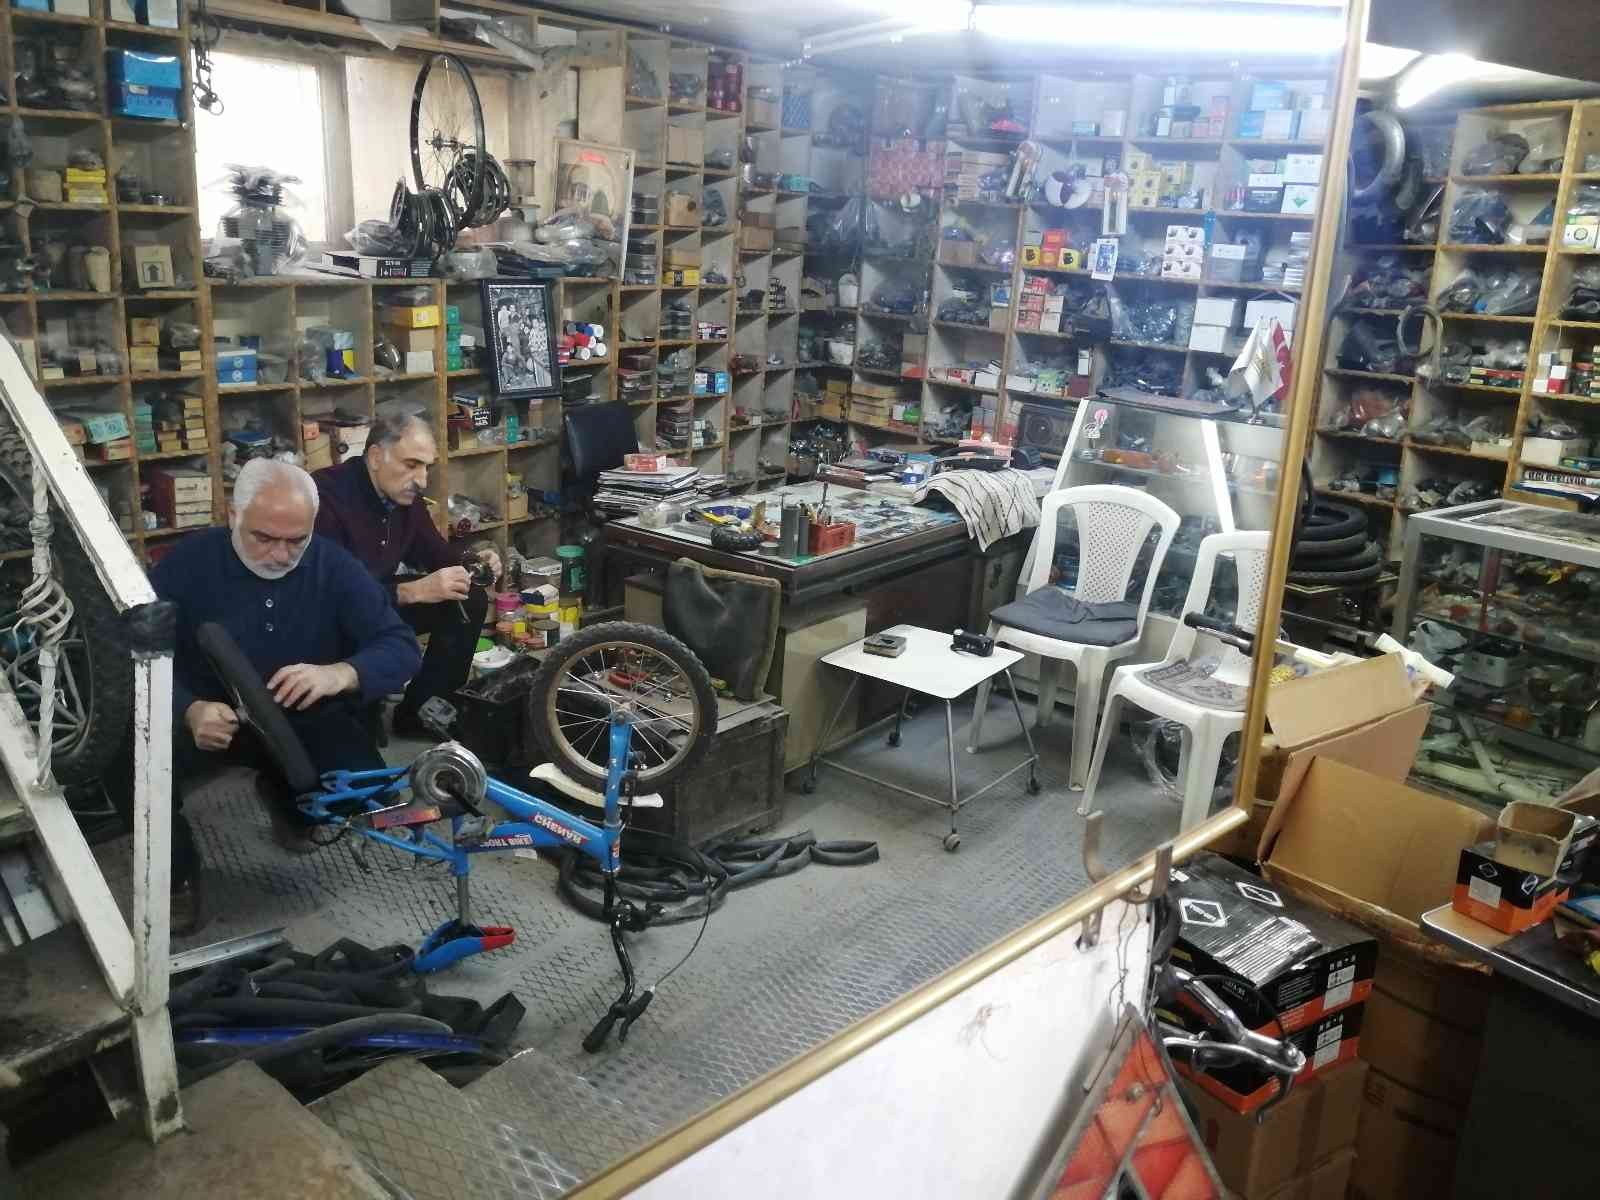 Bisiklet tamircisi iki kardeş 40 yıldır eskimiş bisikletleri hayata döndürüyor #elazig